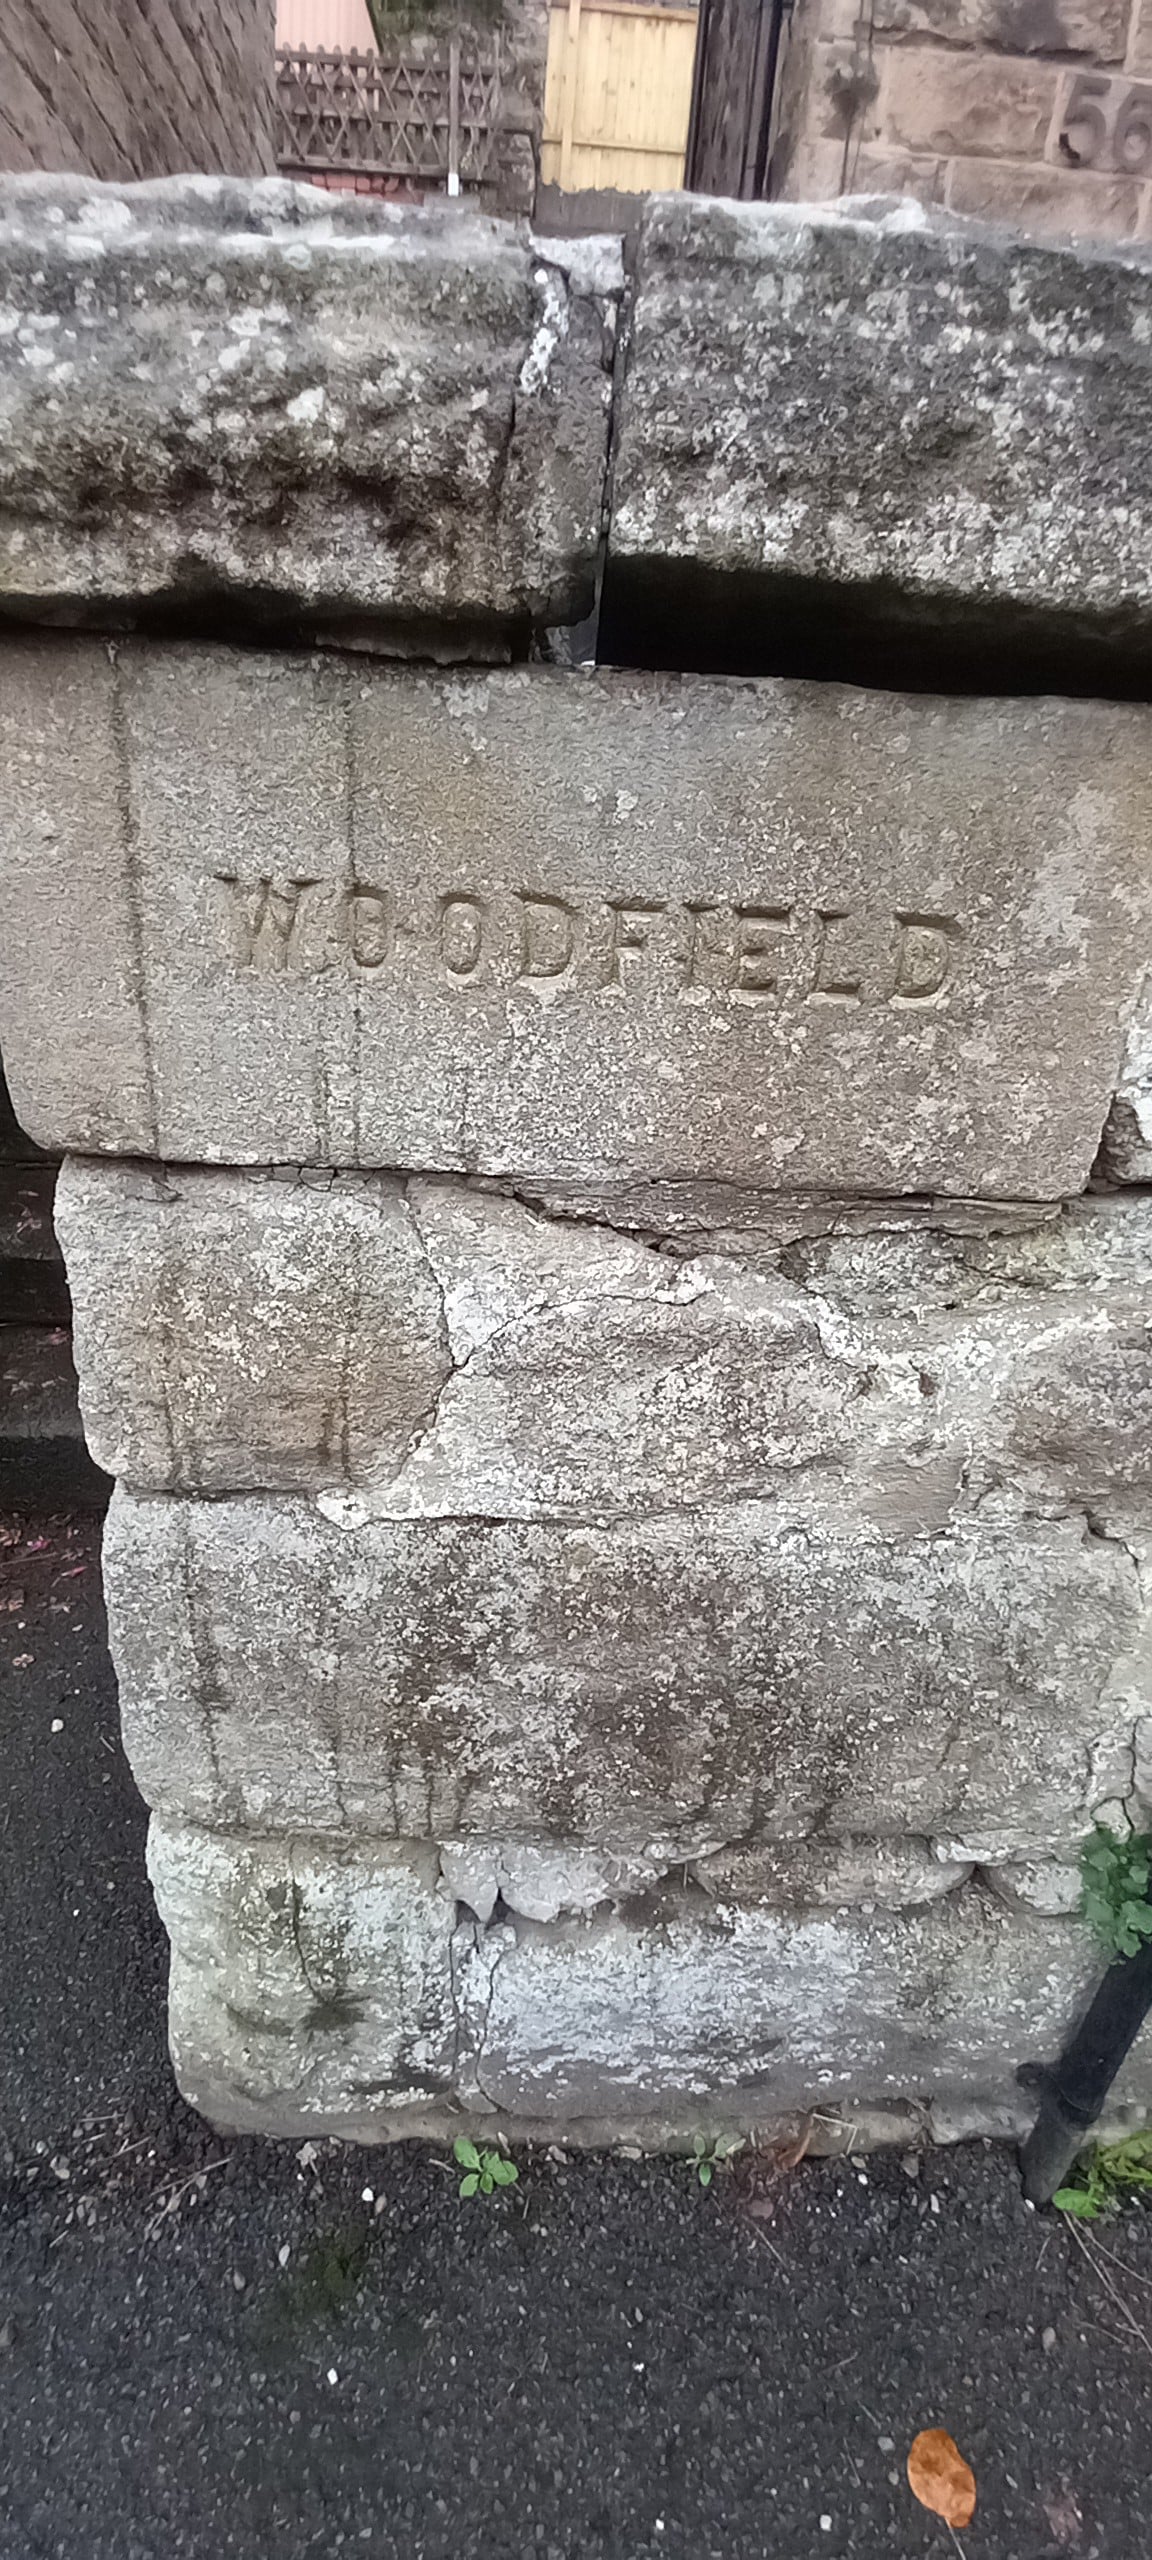 Woodfield hideaway